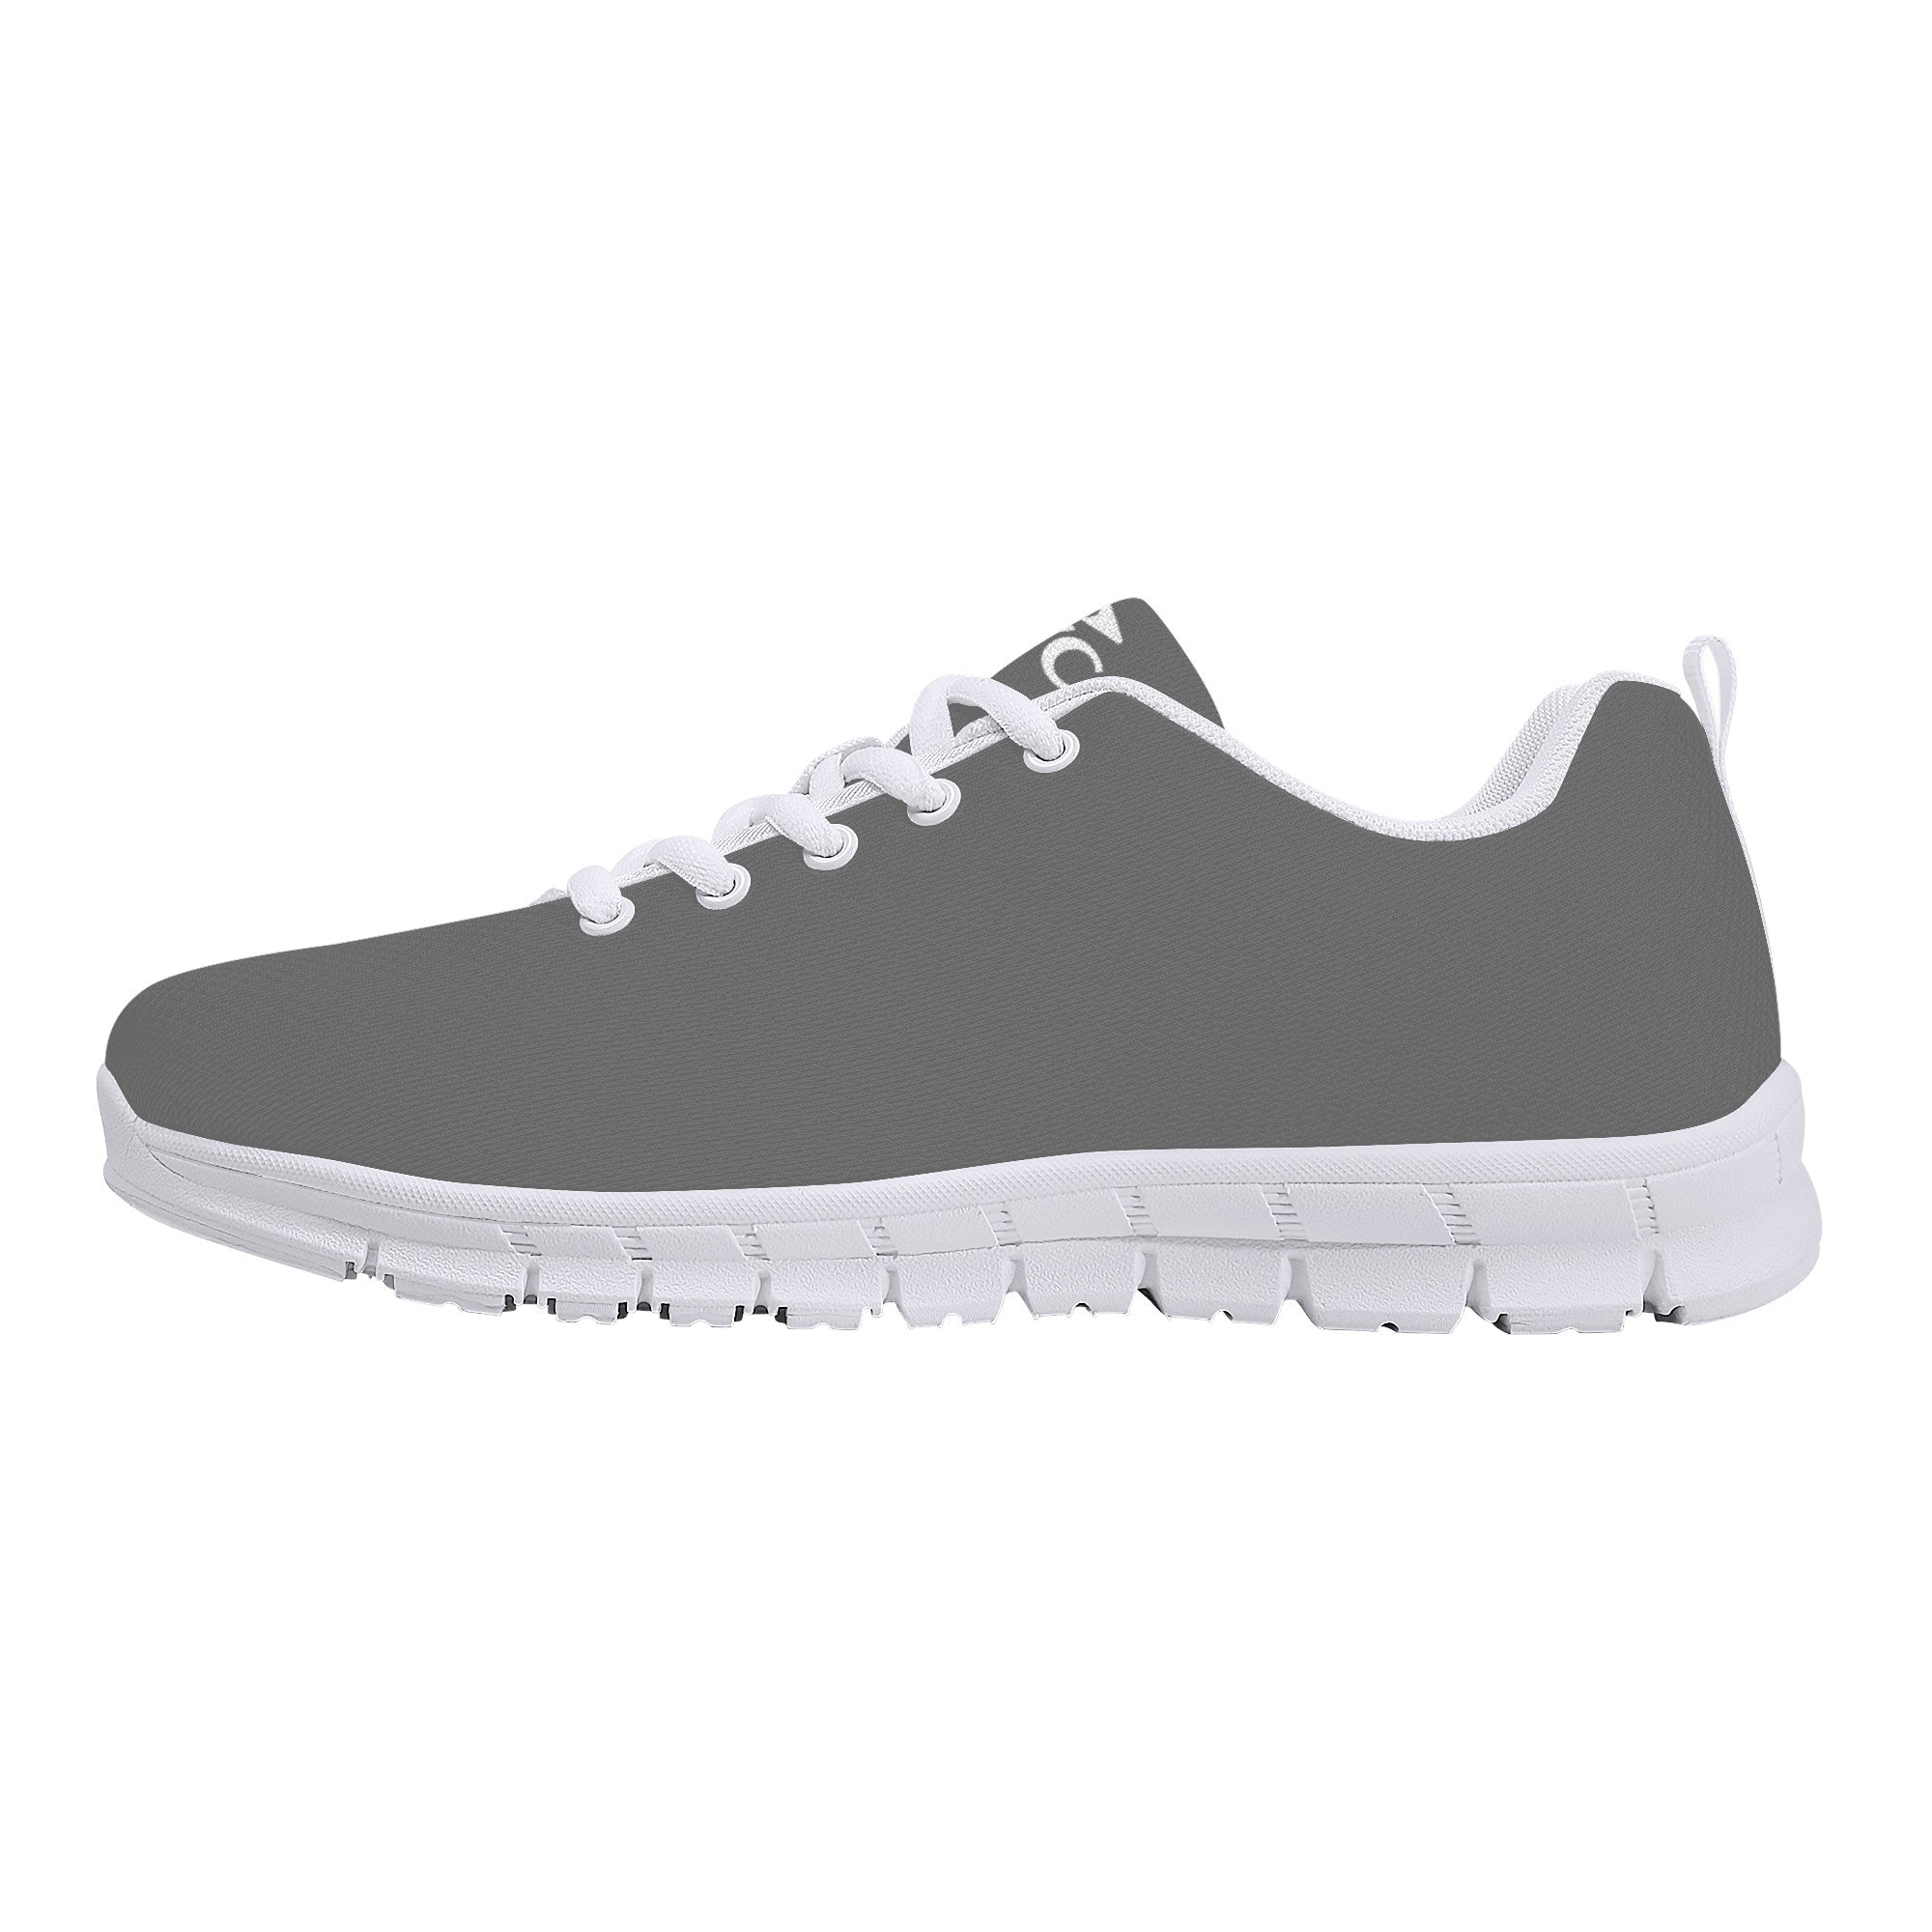 Paycor Sneakers - White - Shoe Zero